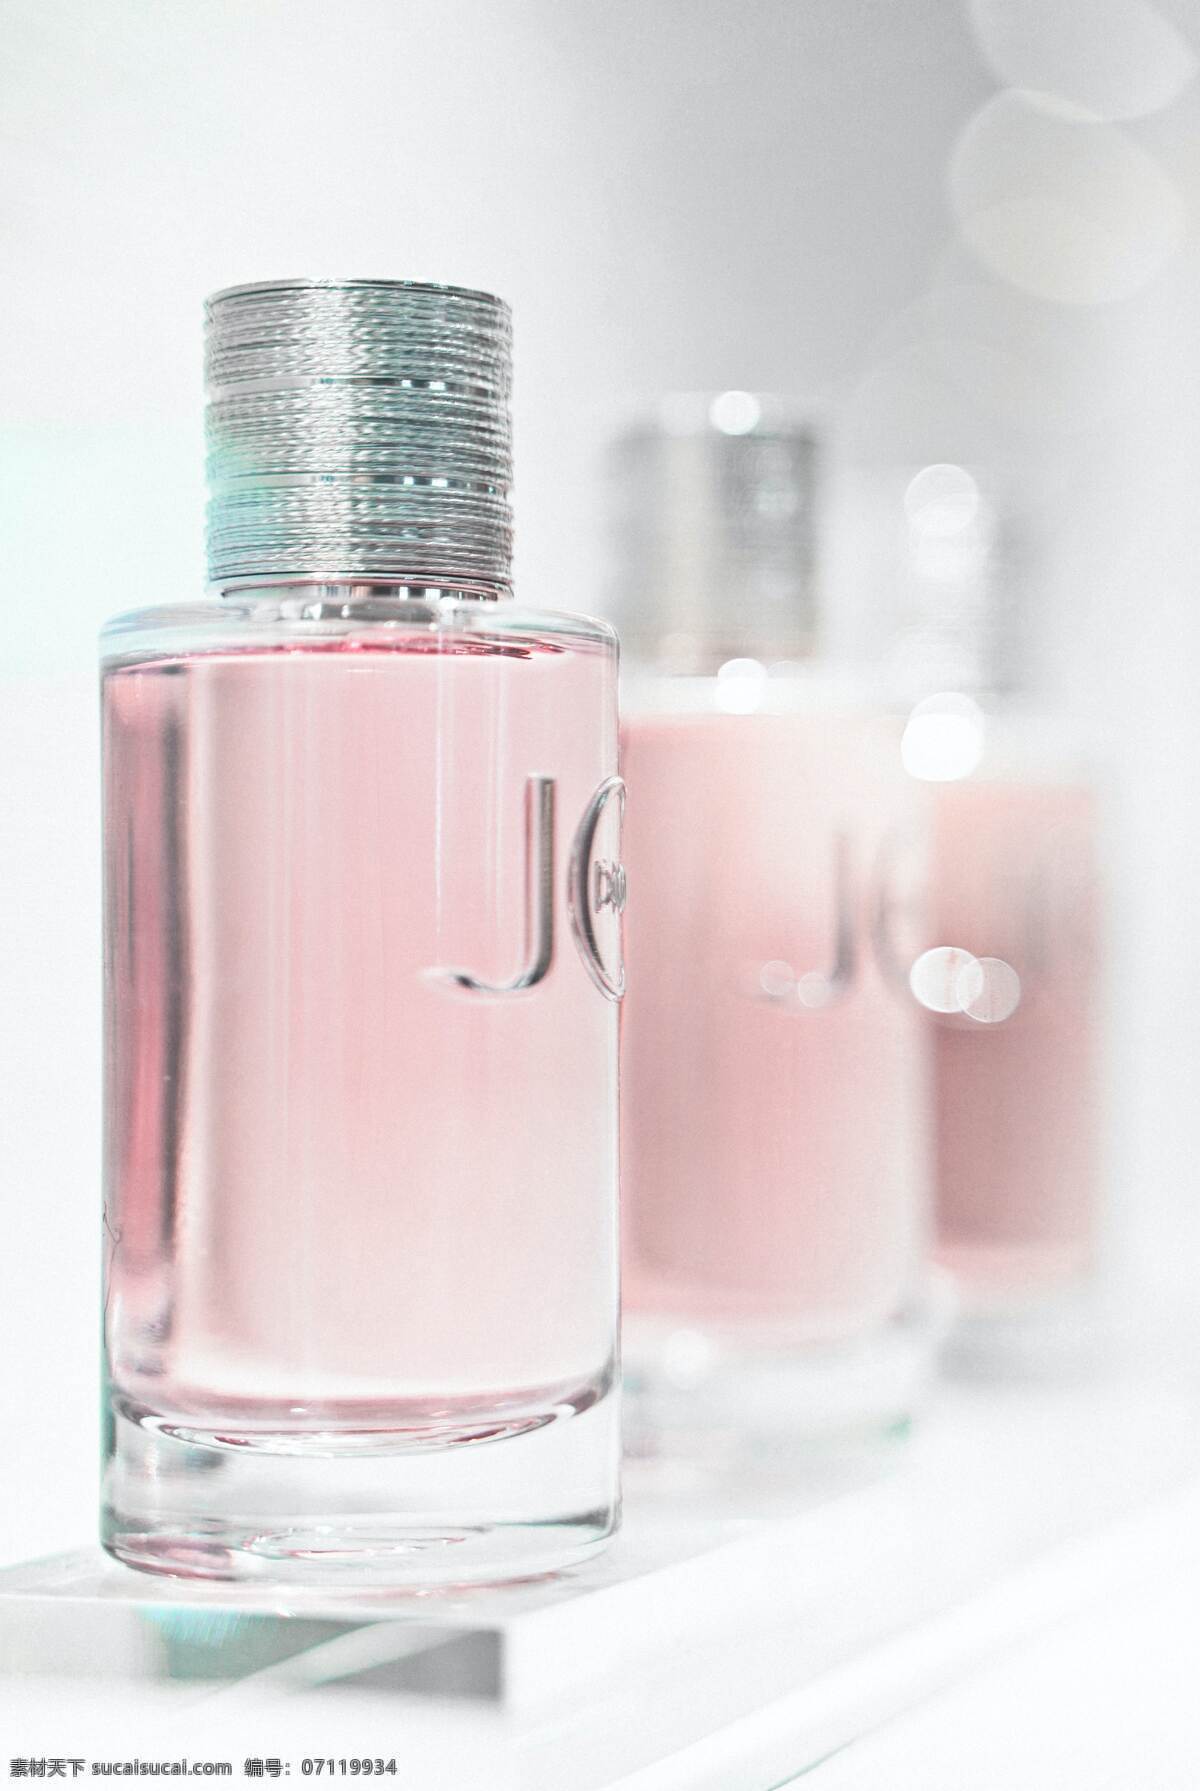 粉色香水瓶 粉色 香水 香水瓶 化妆品 生活百科 生活素材